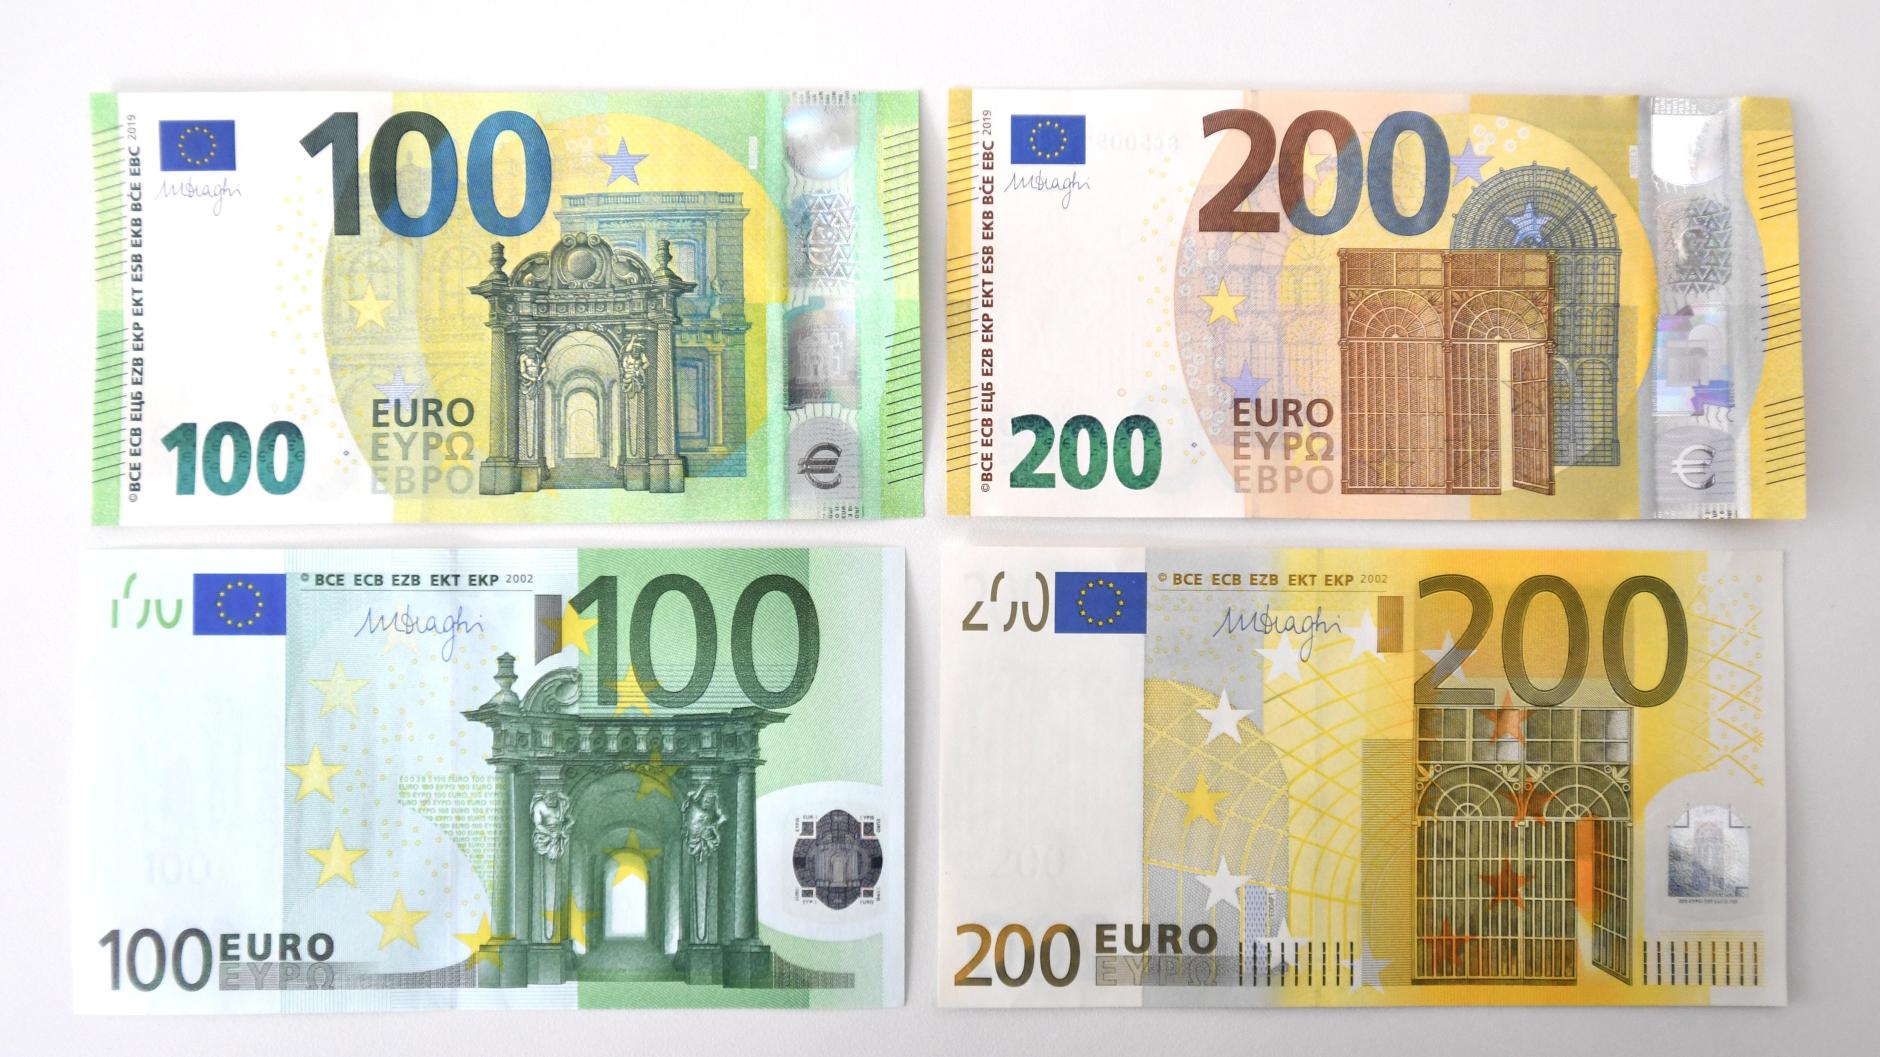 Крупная купюра евро. Купюра 200 евро. 100 Евро купюра. 100 Евро купюра в Германии. Купюра 200 евро как выглядит.